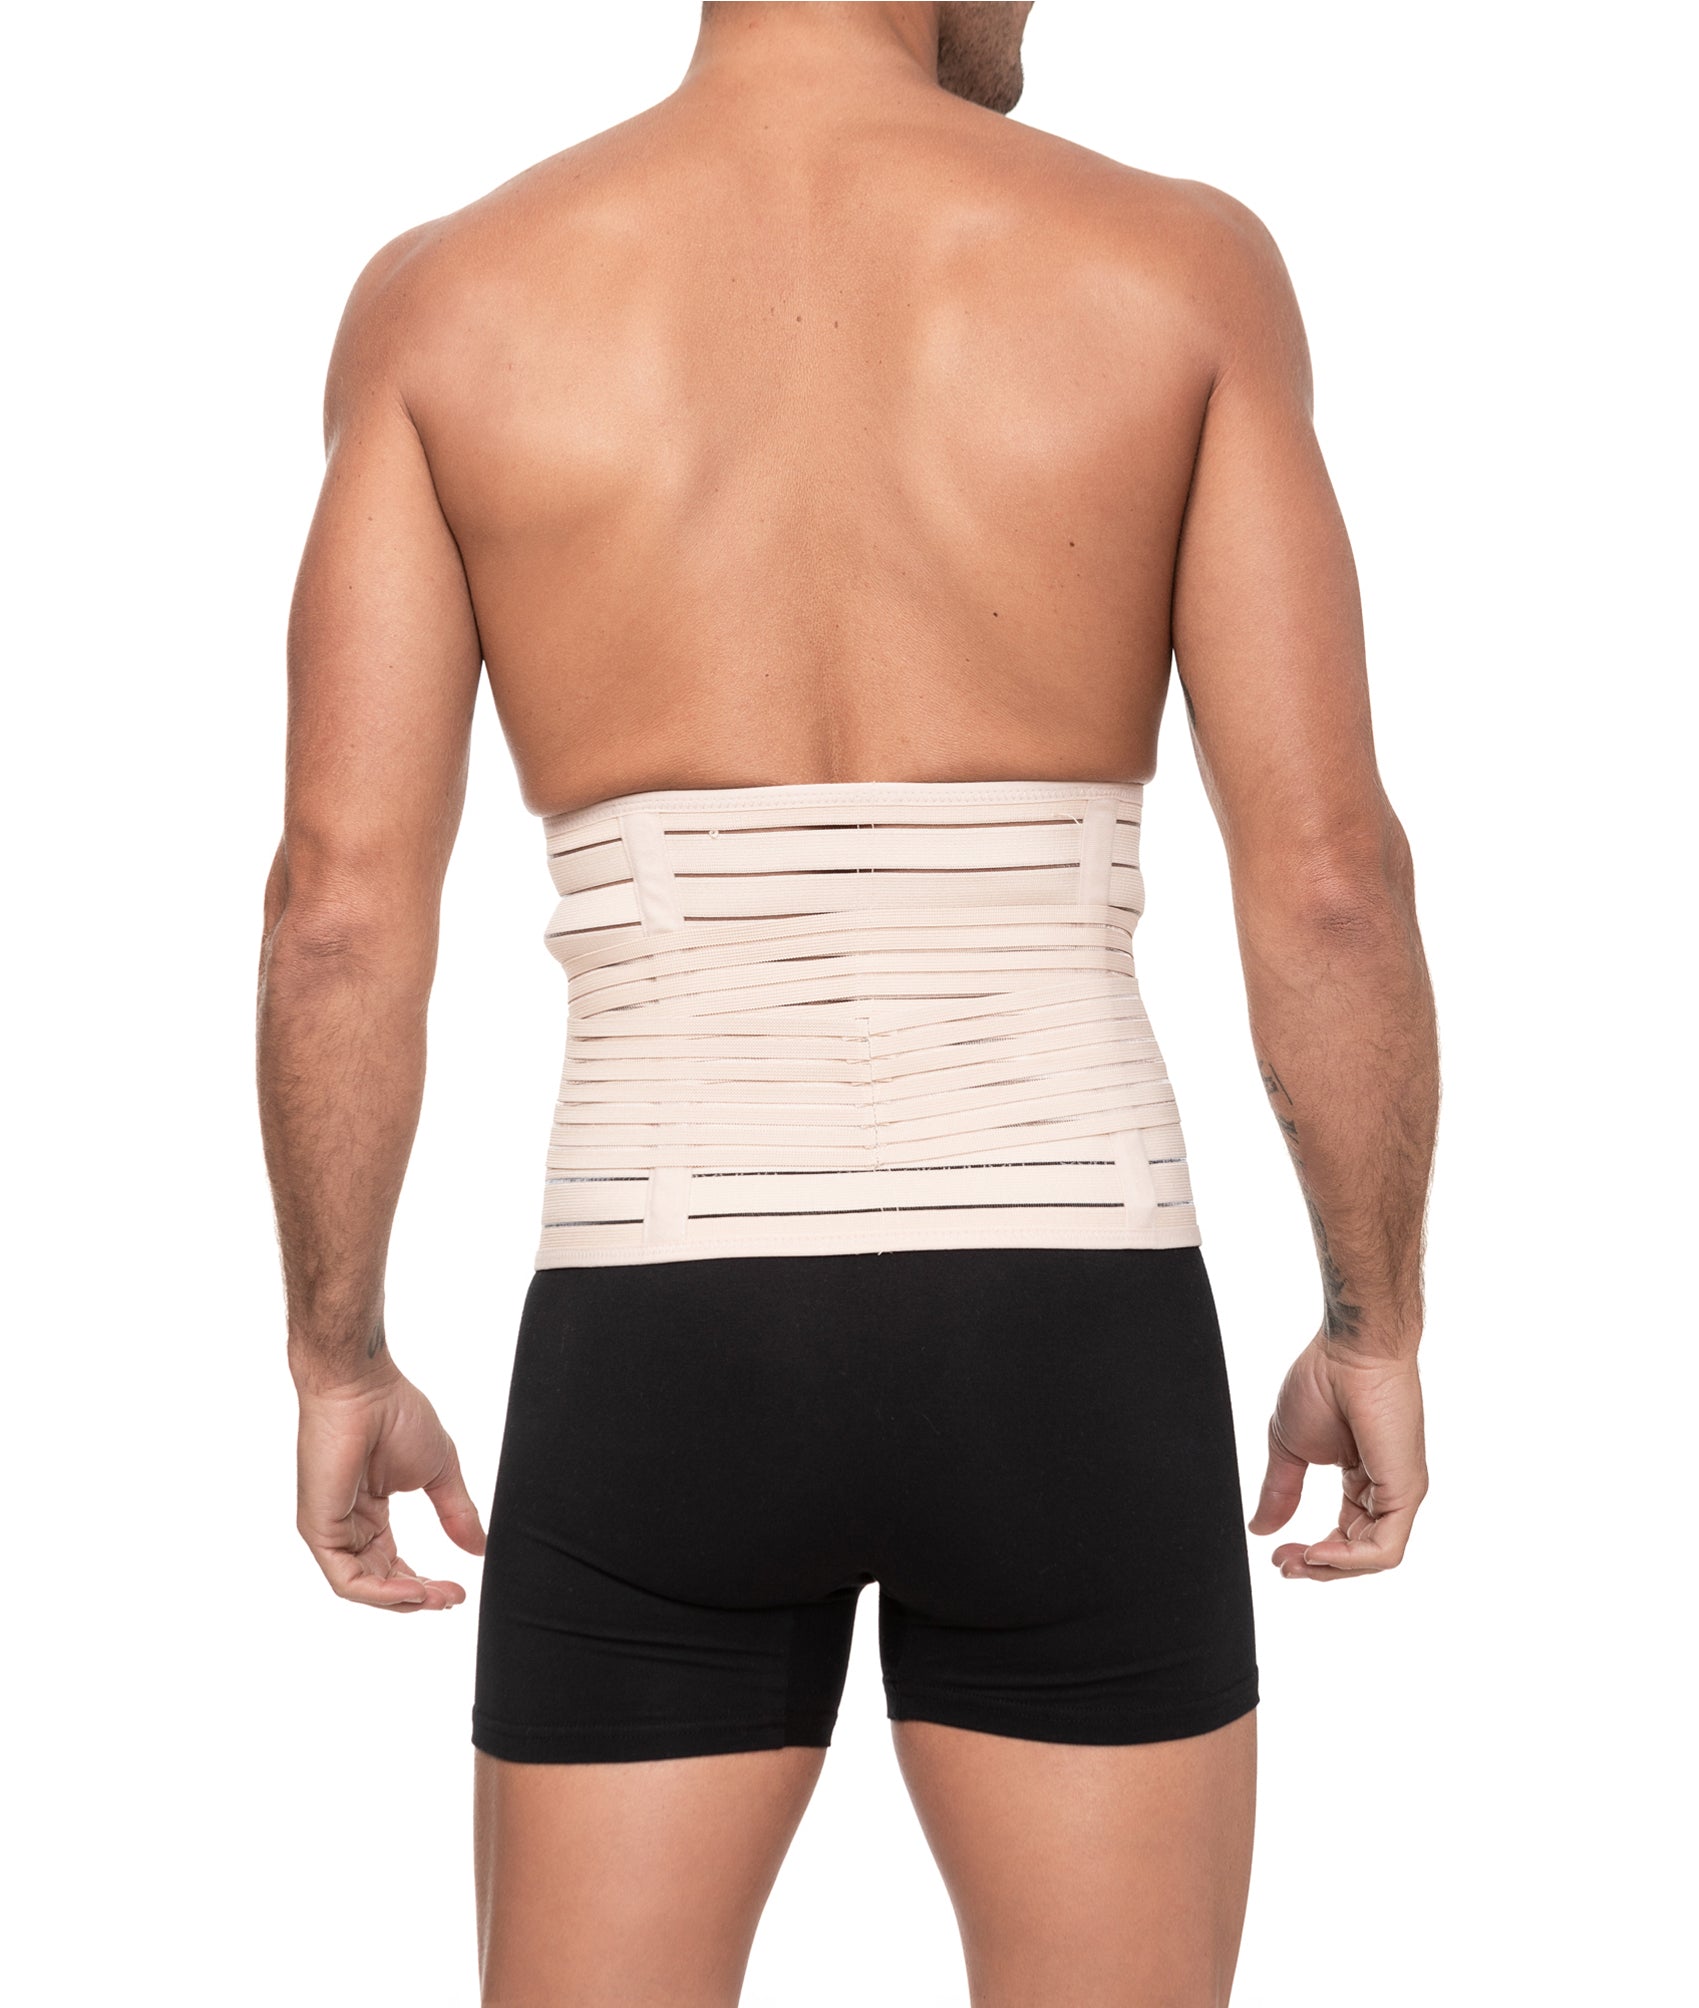 Channo Pack de 2 Fajas Cinturones Lumbares para Espalda Hombre y Mujer